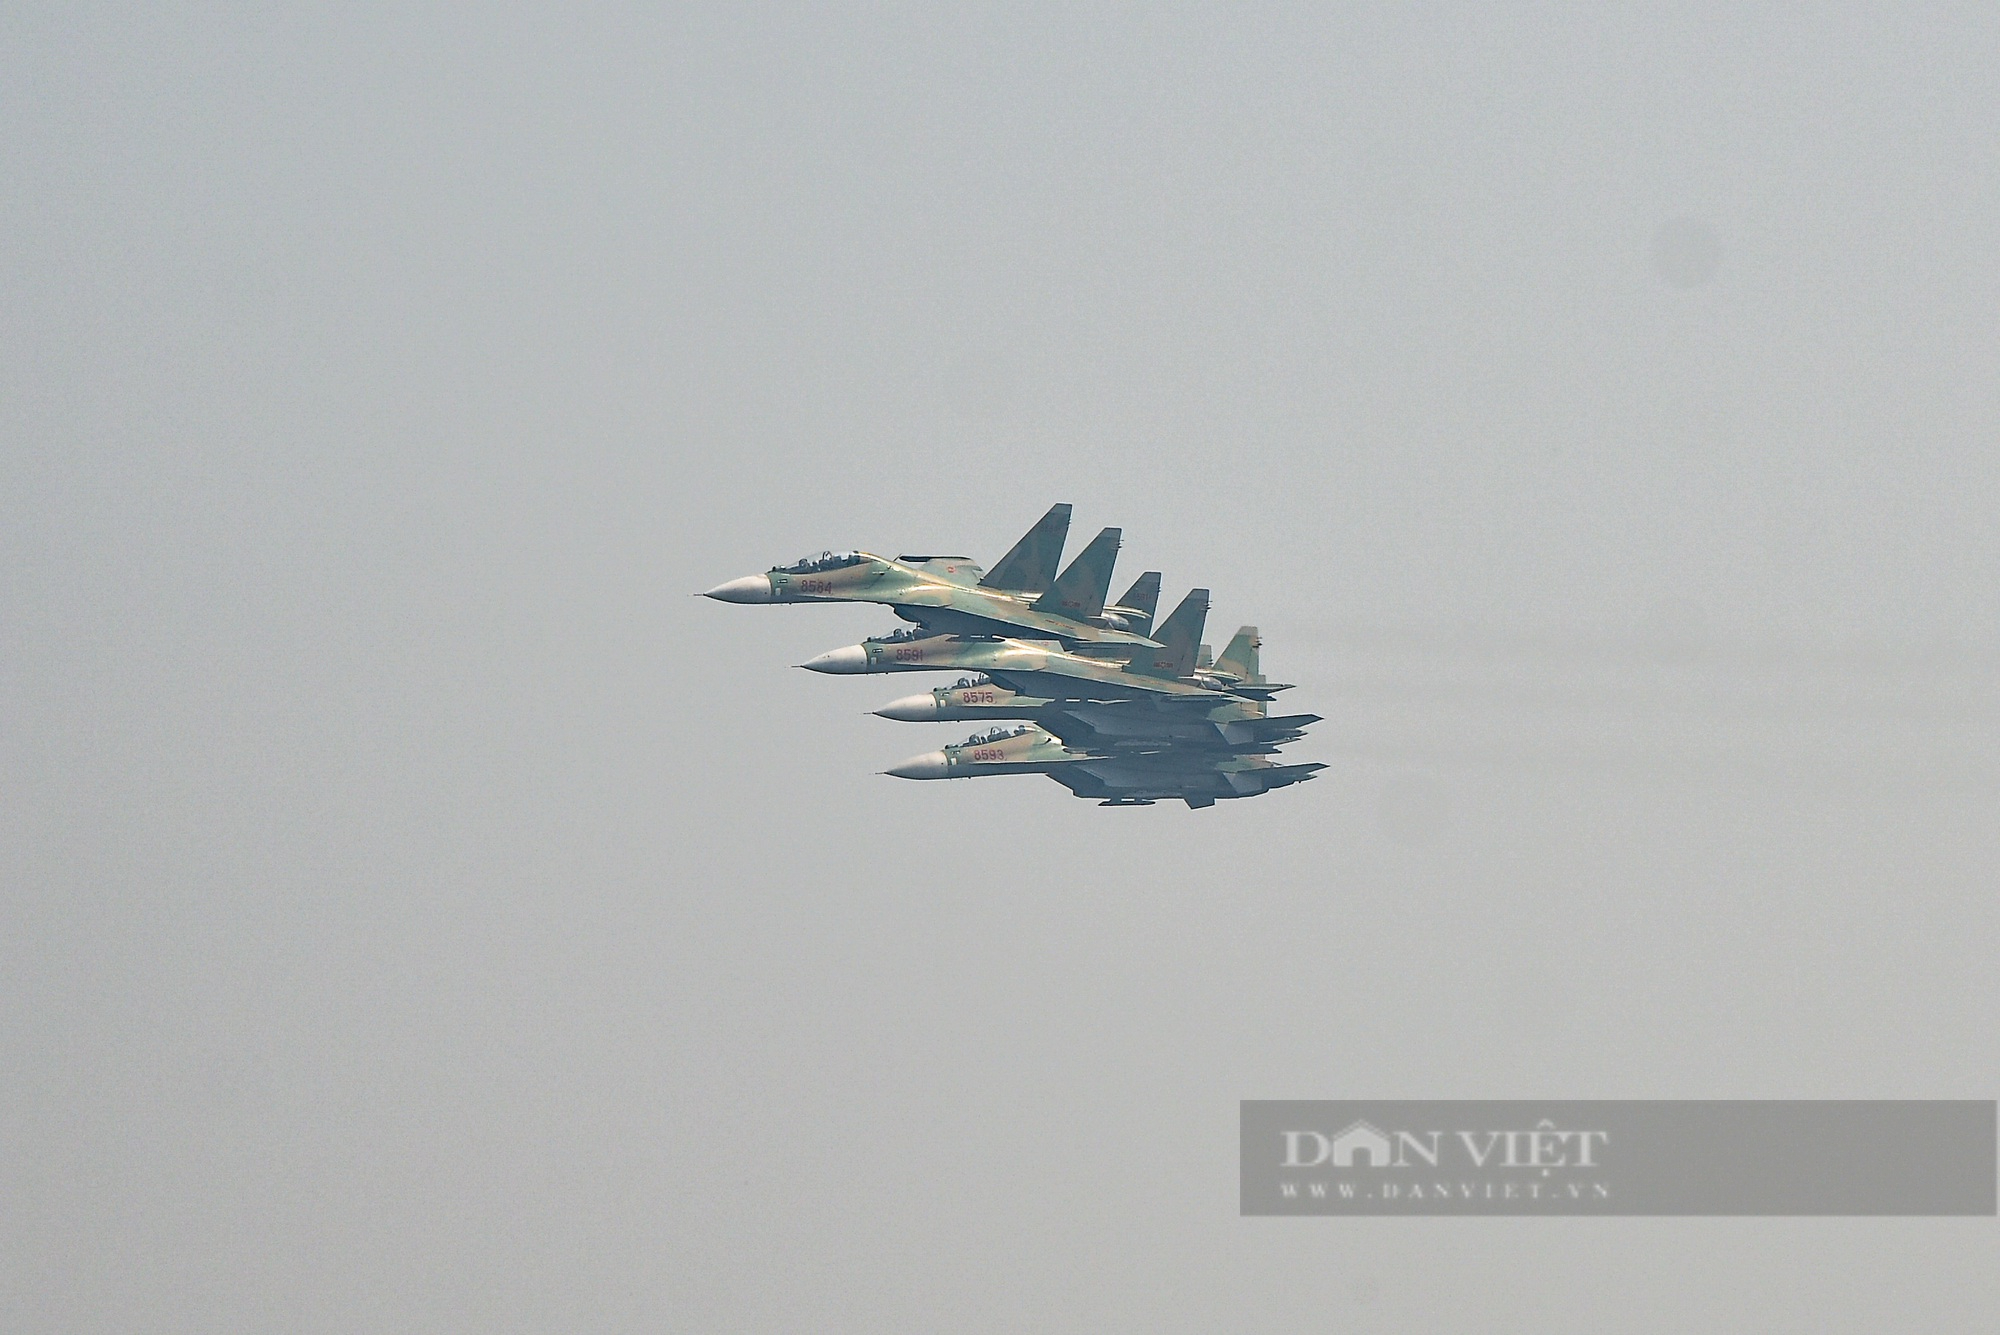 Ấn tượng hình ảnh &quot;Hổ mang chúa&quot; Su-30 bay luợn trên bầu trời Hà Nội - Ảnh 1.